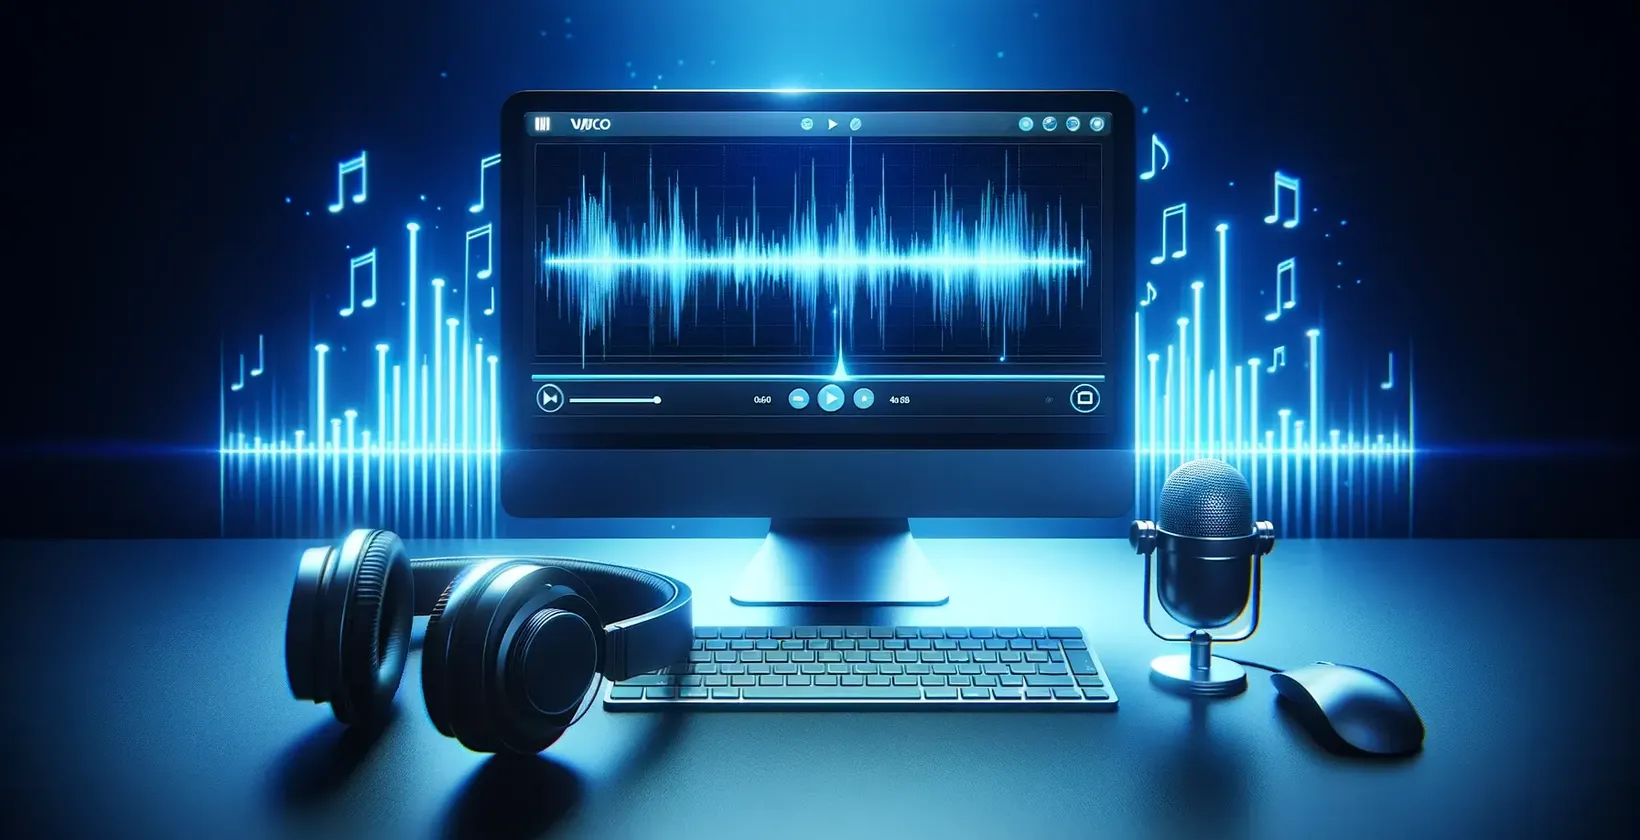 Logiciel de transcription automatique présenté dans un espace de travail numérique avec ordinateur, écouteurs et microphone de table.